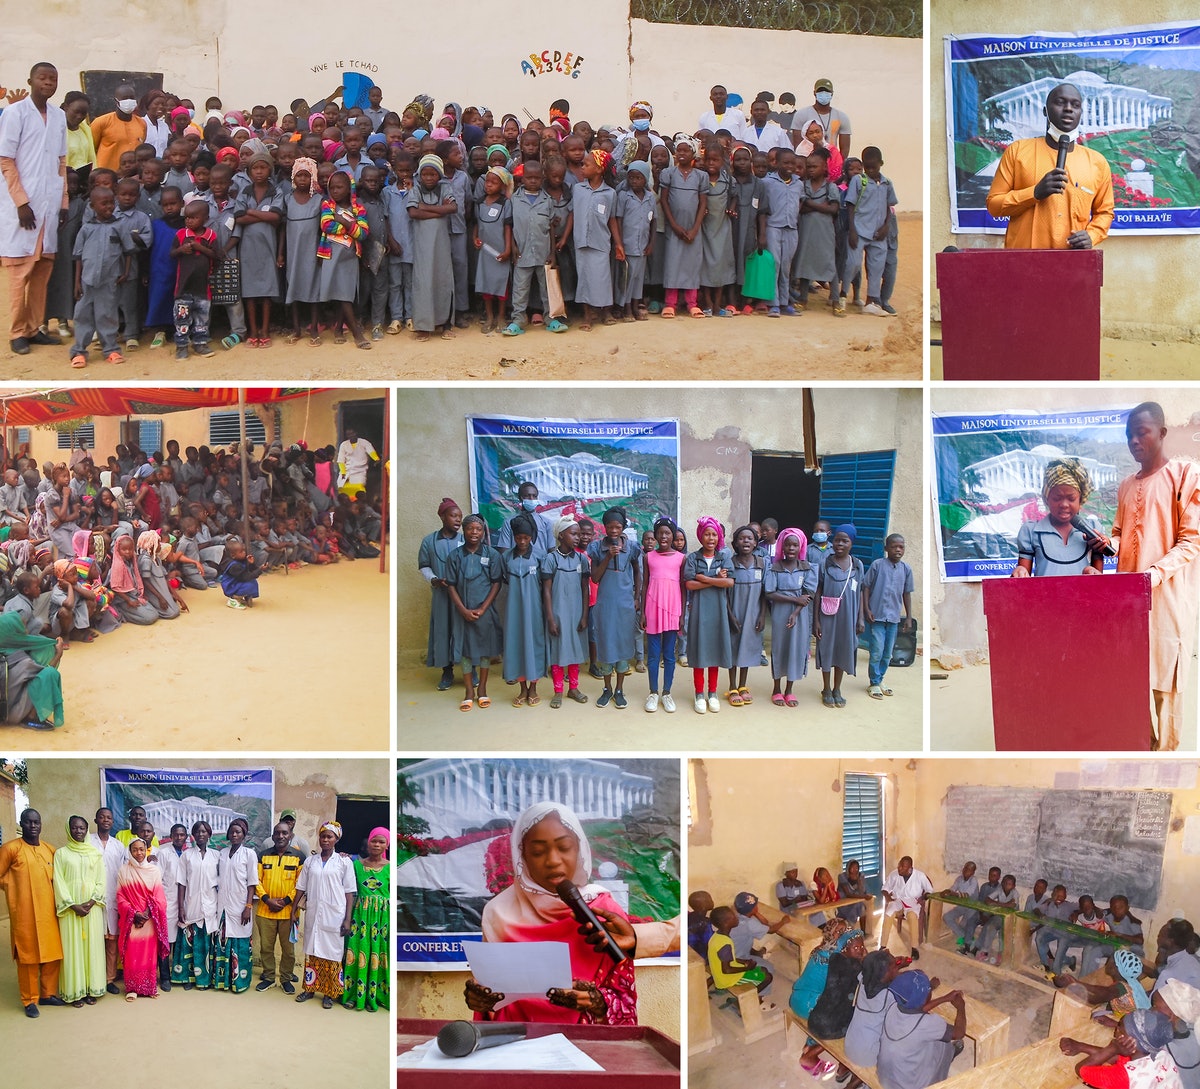 Conférence à l’école Mashiyyat au Tchad, au cours de laquelle les étudiants et les professeurs présents ont exploré les mêmes principes que ceux discutés dans les conférences du monde entier.